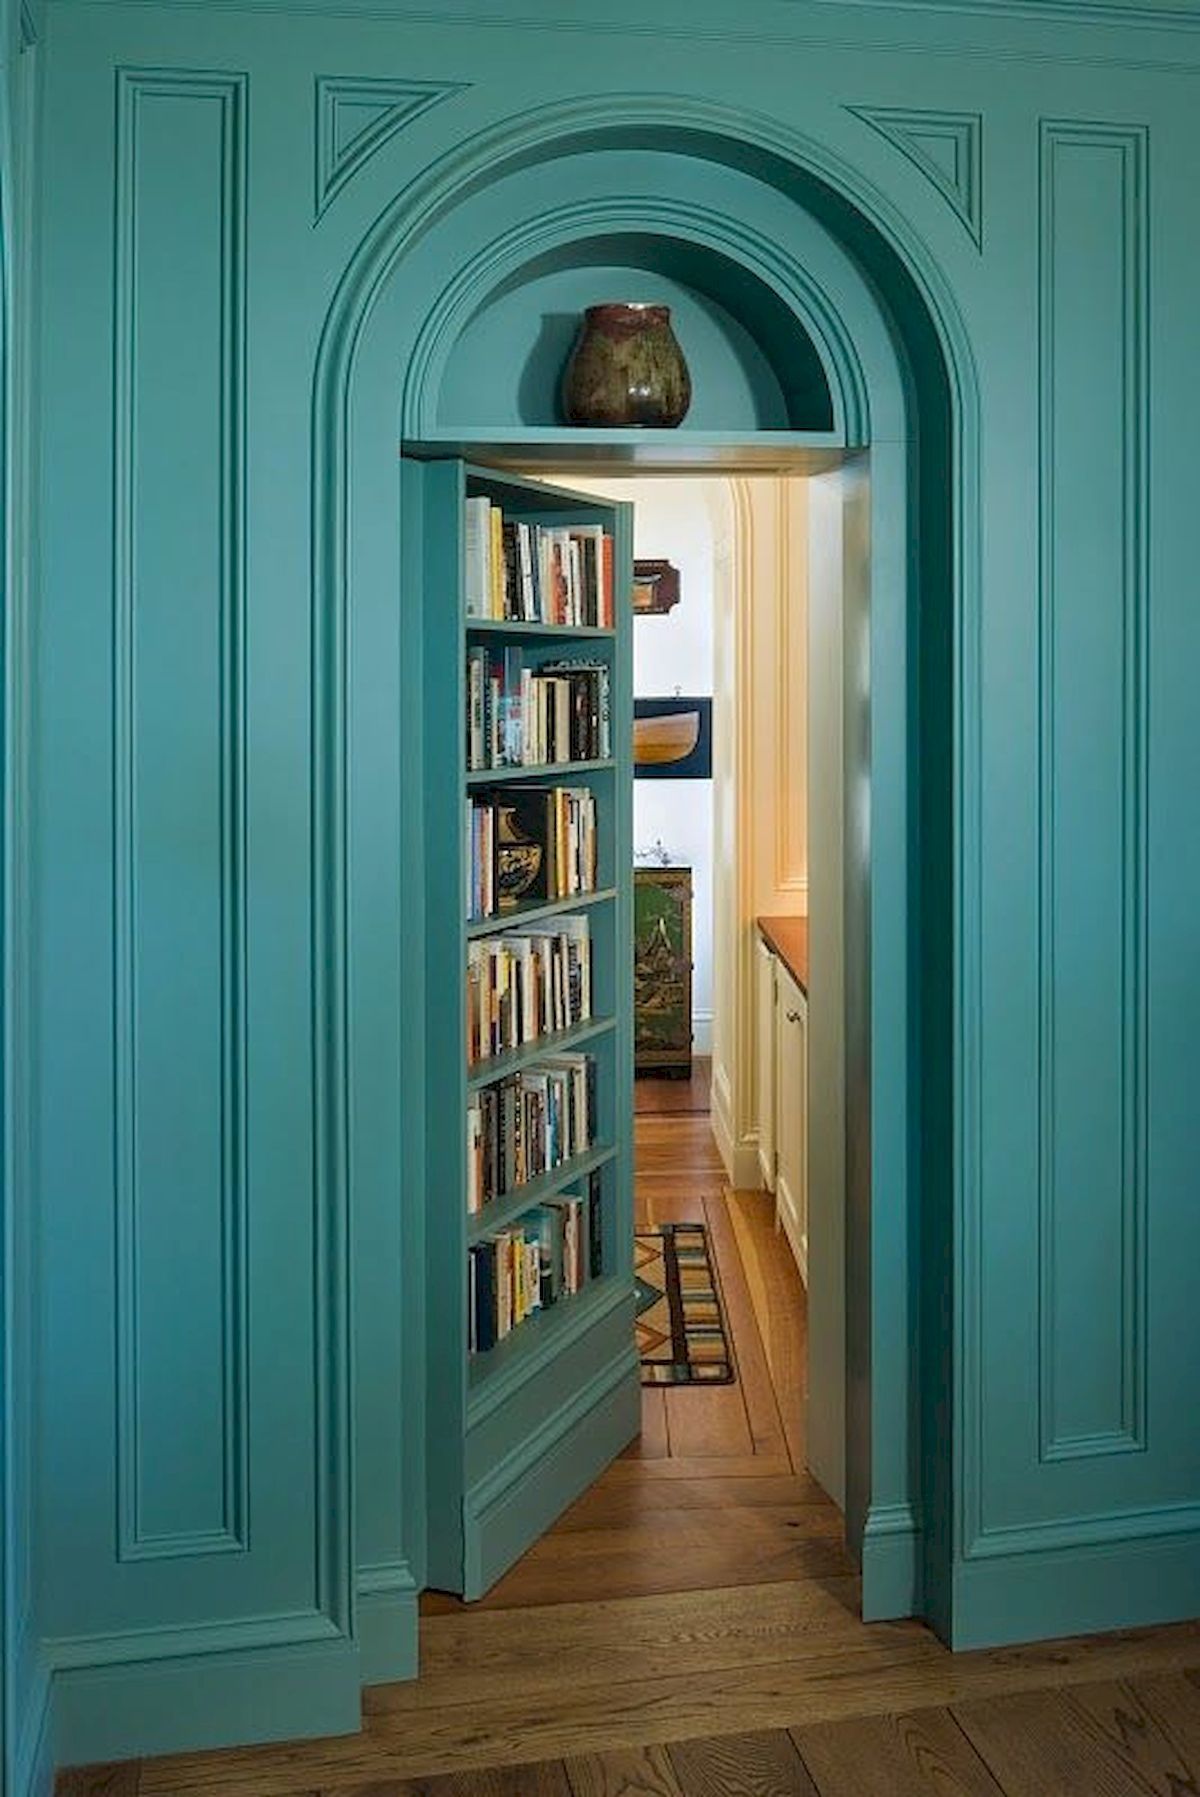 Đối với những ai yêu thích sách thì ý tưởng kết hợp cửa ra vào và giá sách sẽ khiến họ mê mẩn ngay từ cái nhìn đầu tiên, chẳng hạn như cánh cửa sơn xanh mòng két thời thượng này.